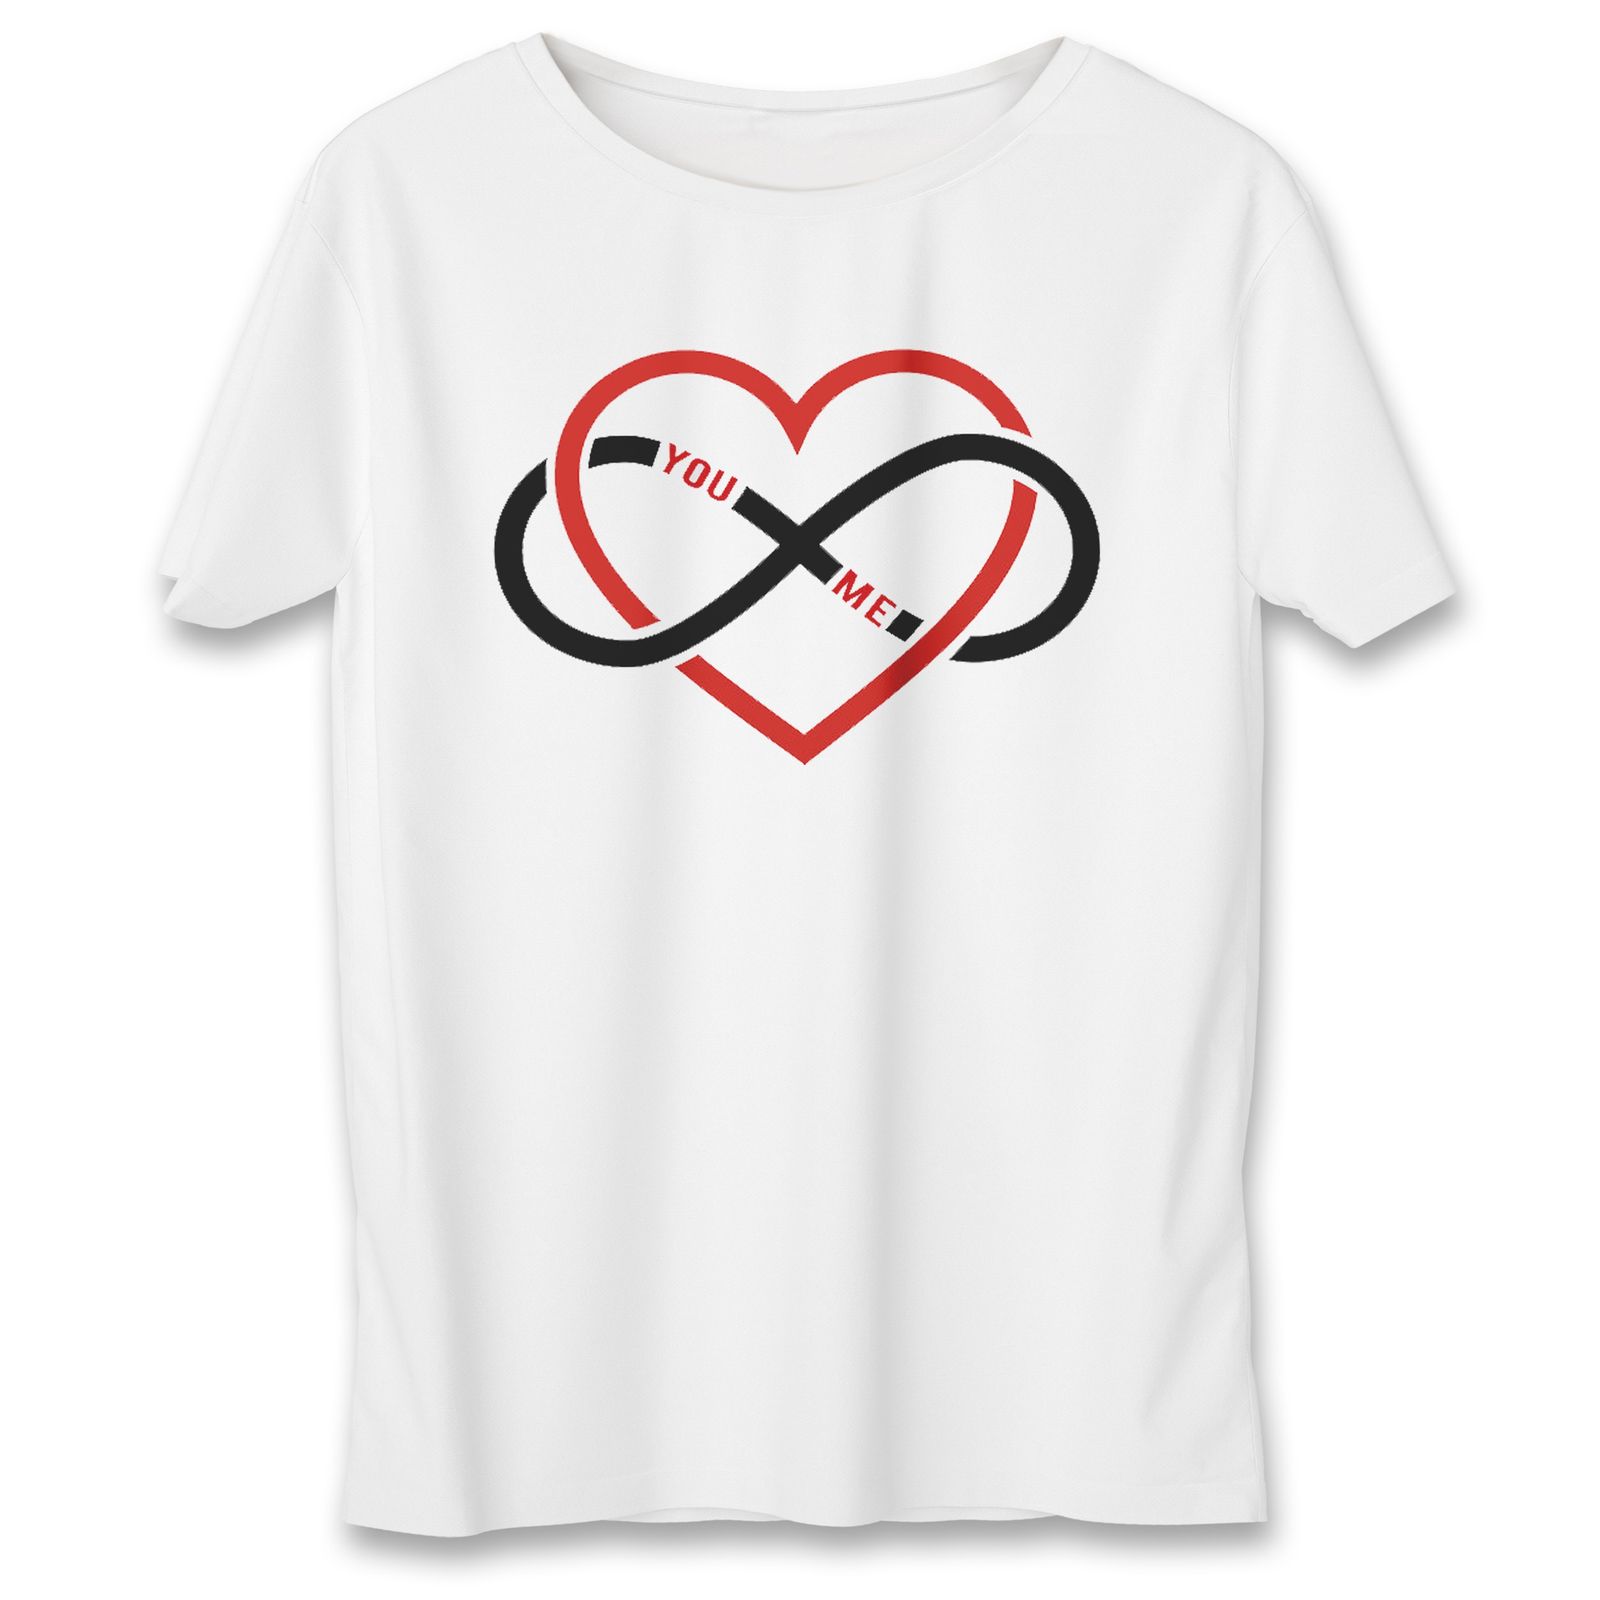 تی شرت مردانه به رسم طرح قلب بی نهایت کد 376 -  - 1